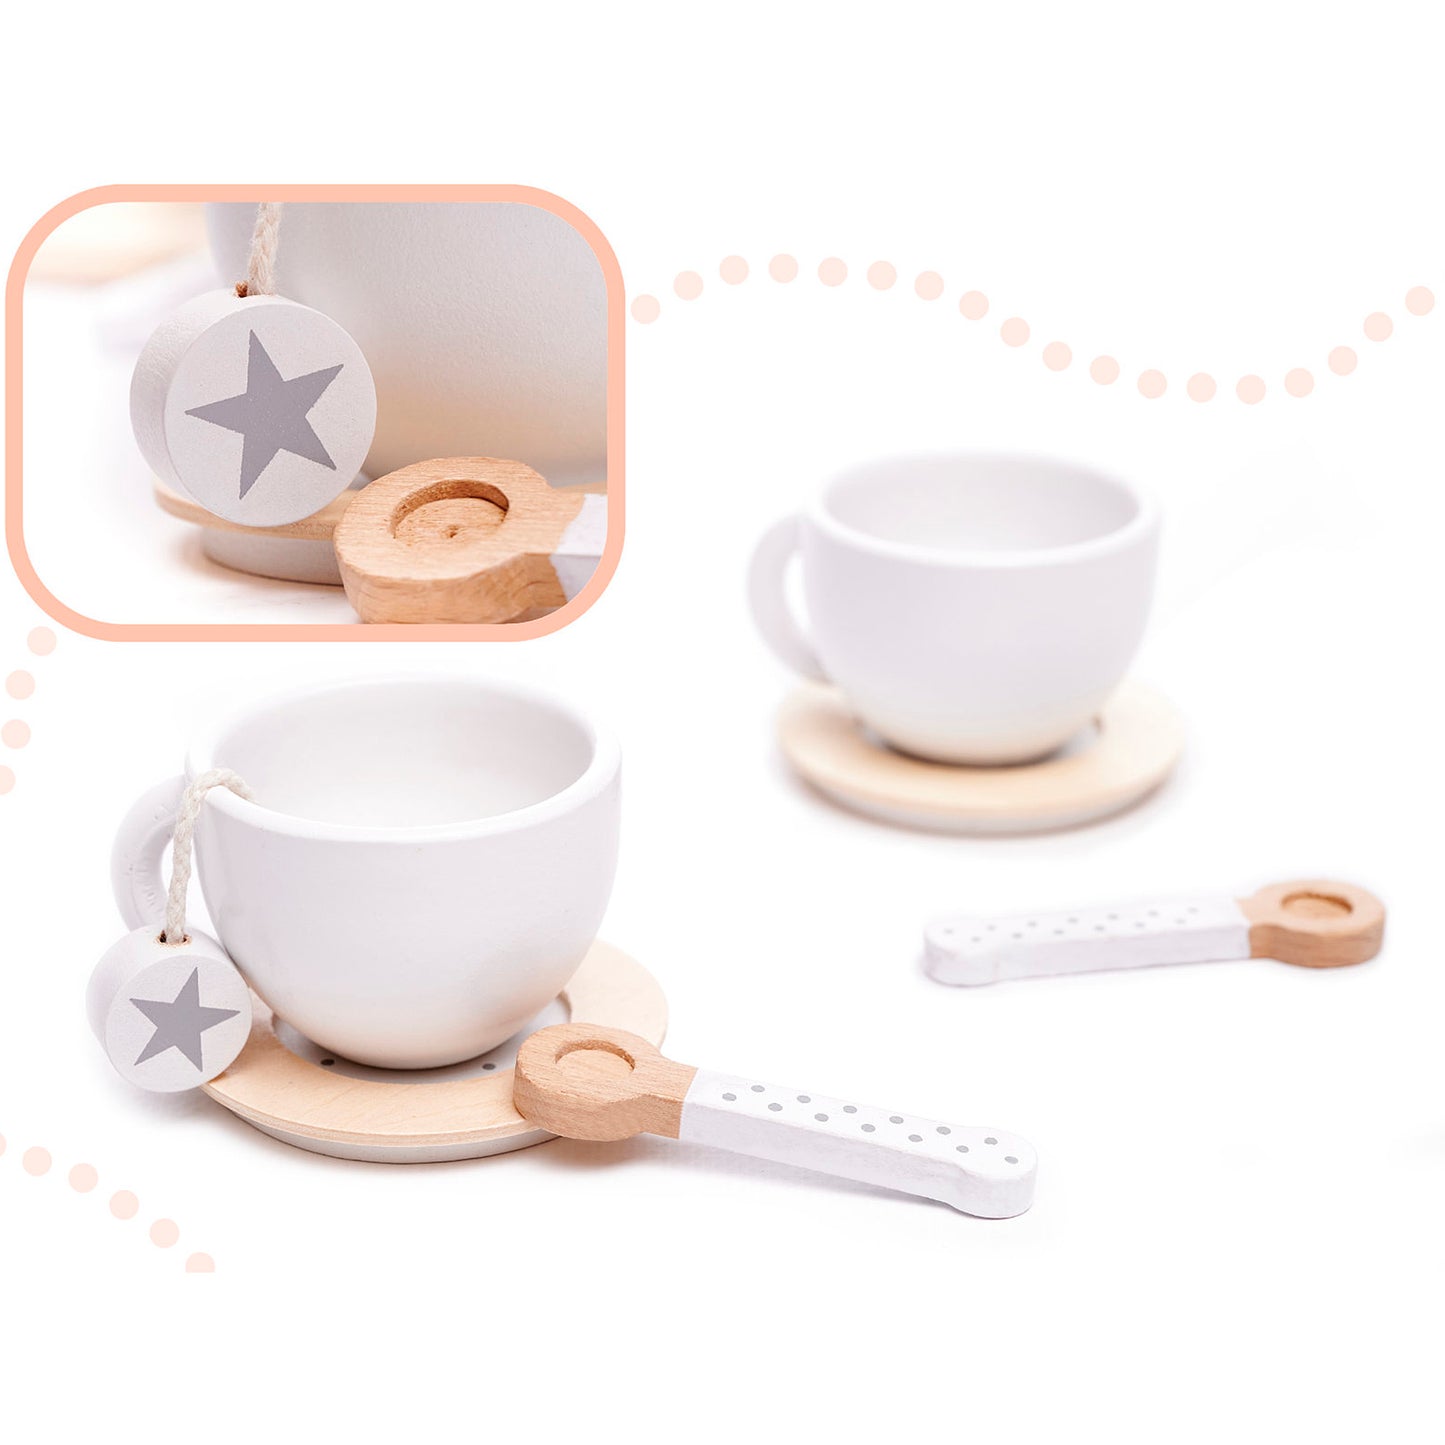 Детски Дървен Комплект за Чай и Кафе с Аксесоари - бяло/сиво